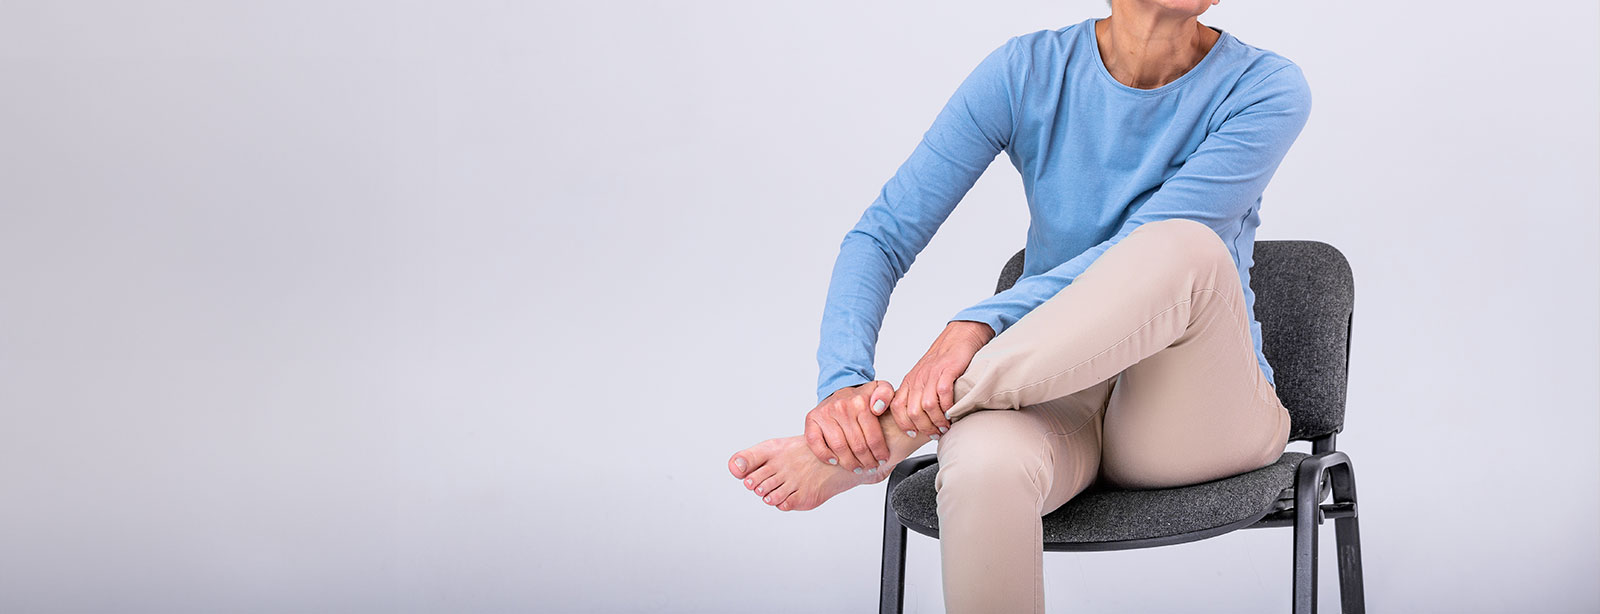 Warum schmerzen deine Beine beim Aufstehen nach dem Sitzen?